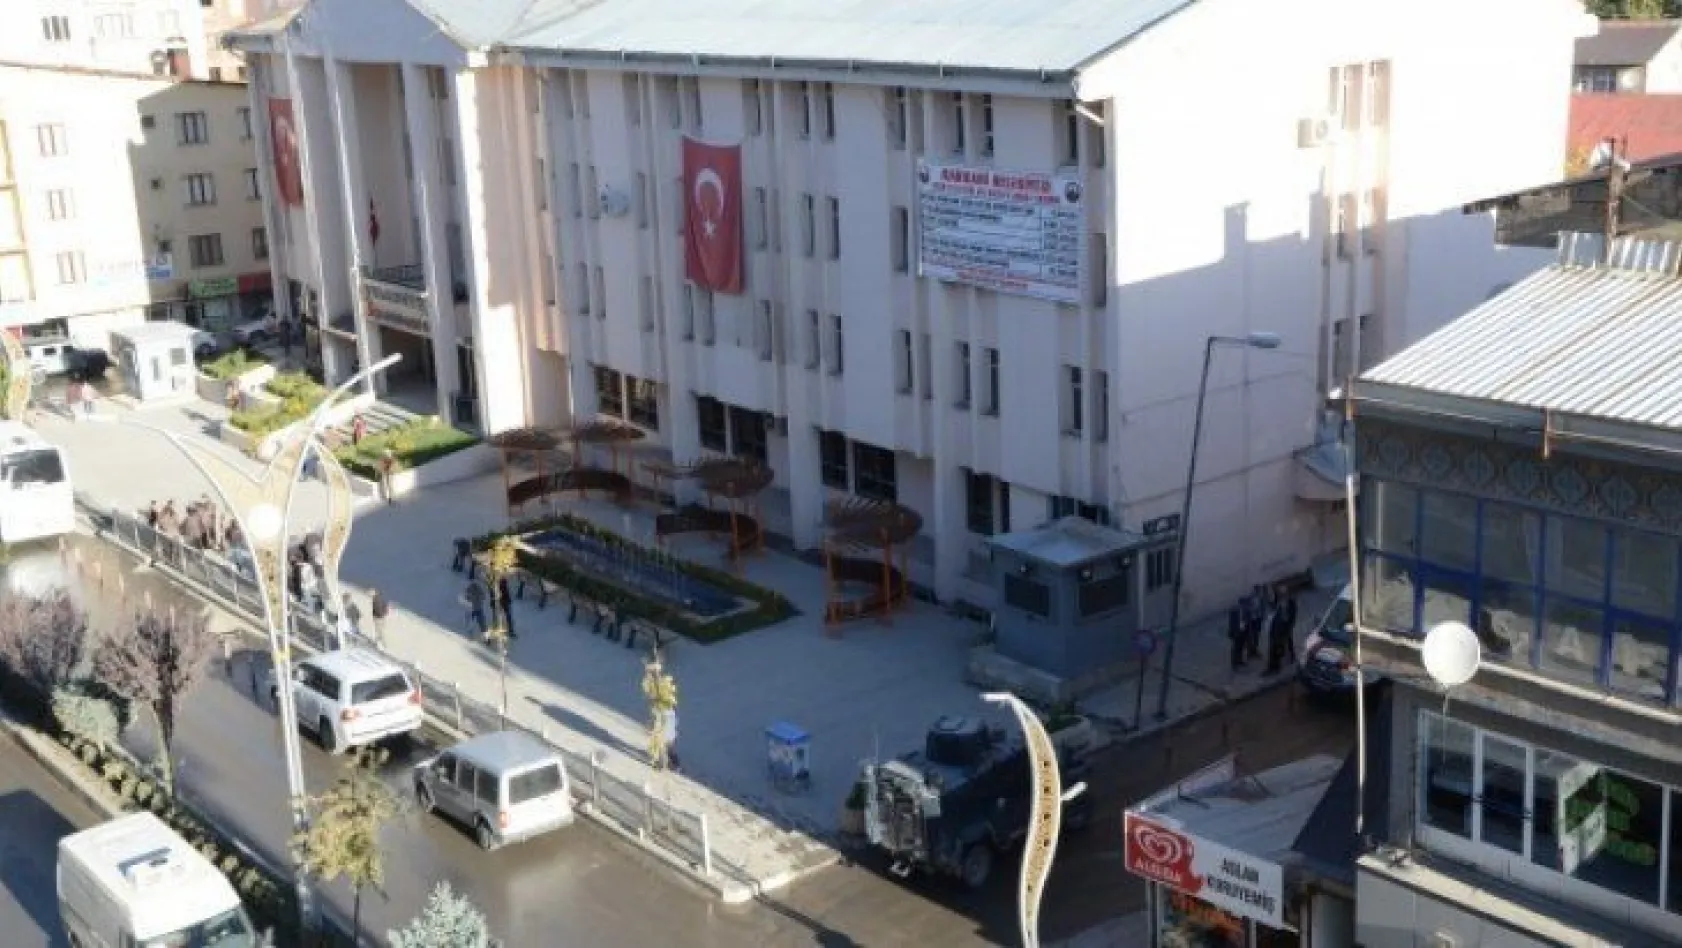 HDP'li belediyelere terör operasyonu!